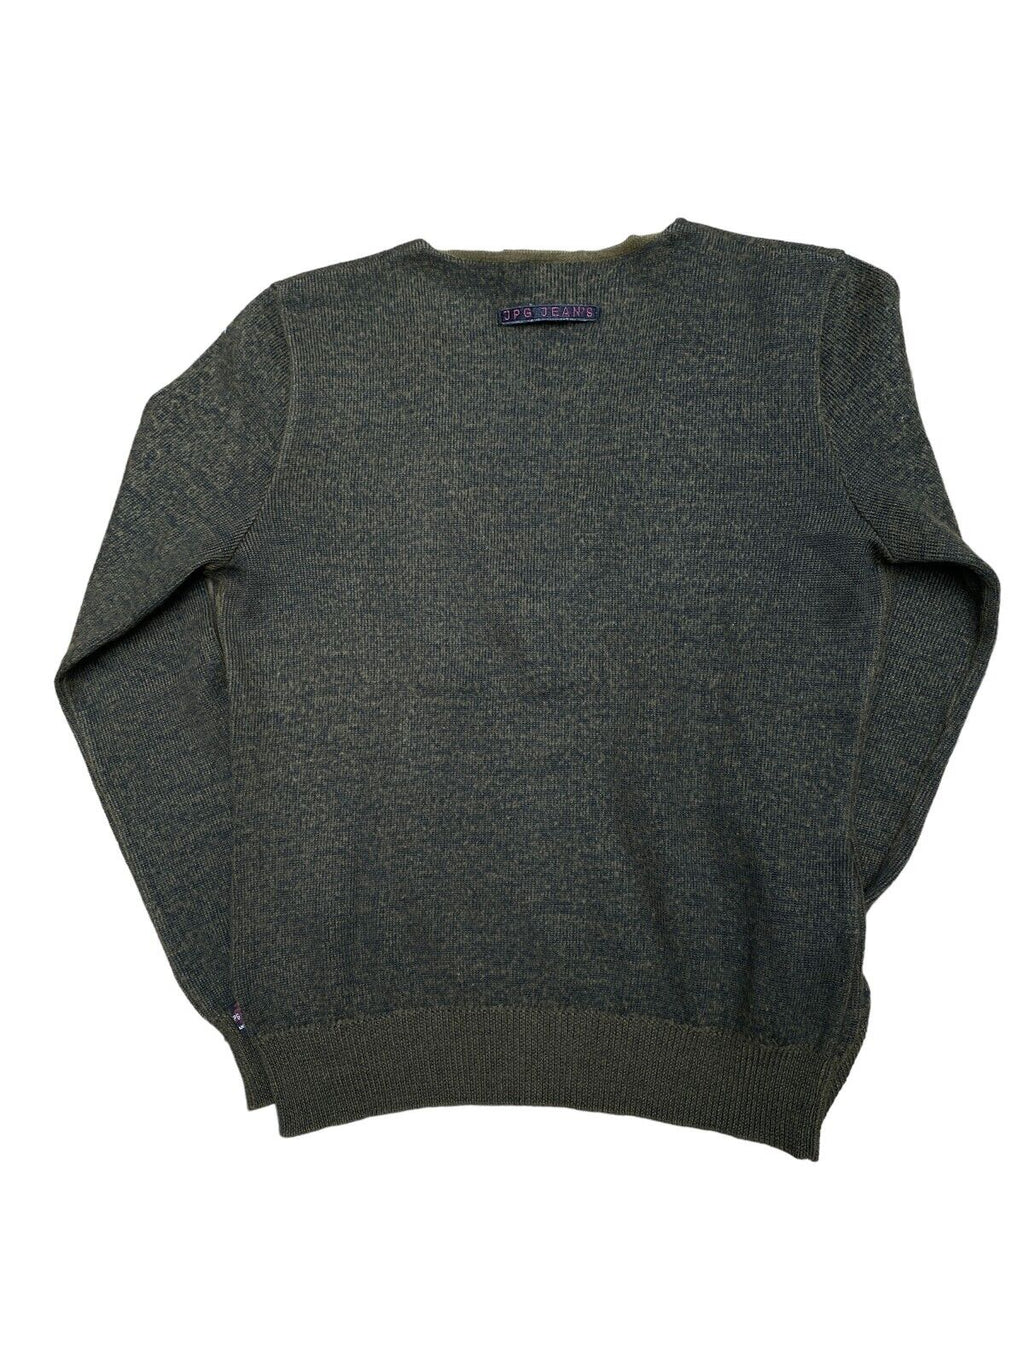 Jean Paul Gaultier Vintage Kaki wool V Neck Sweater Size M